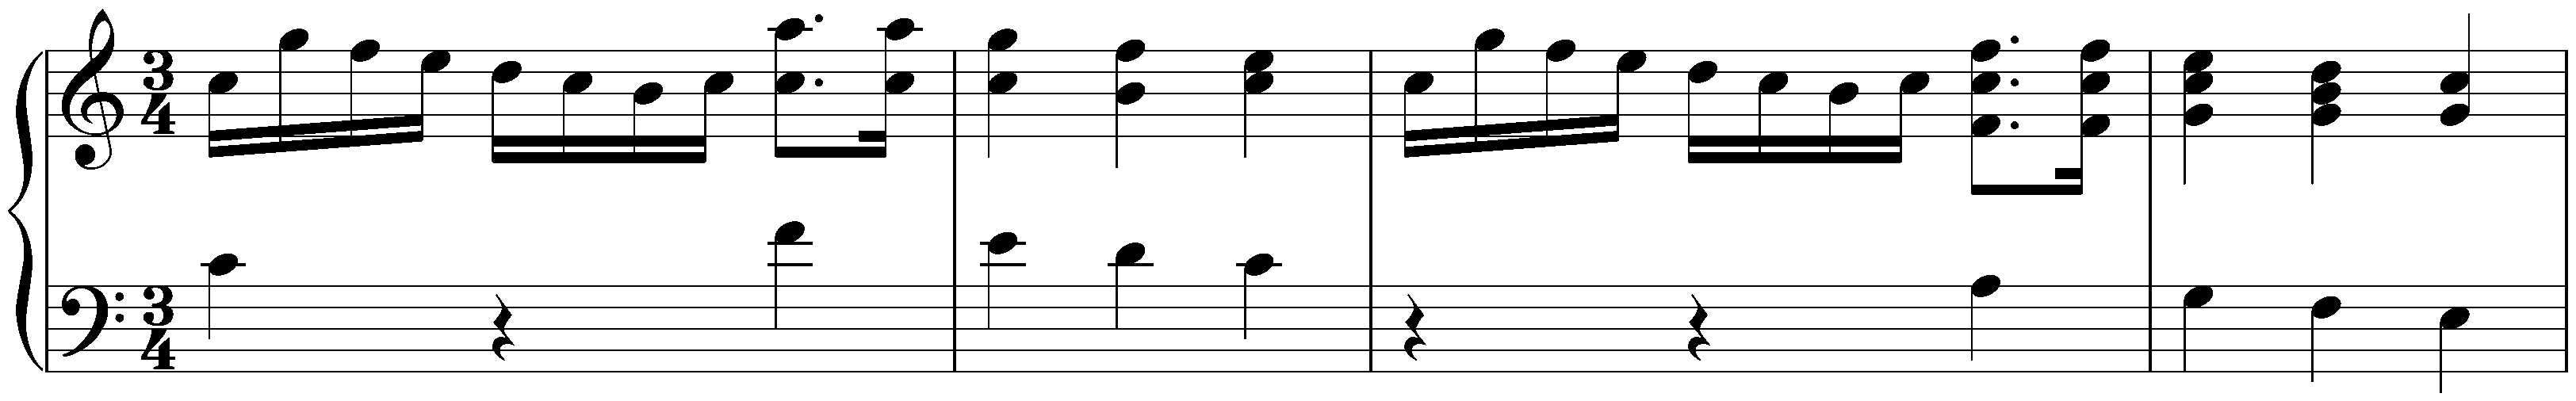 Minuet in C major, WoO 218